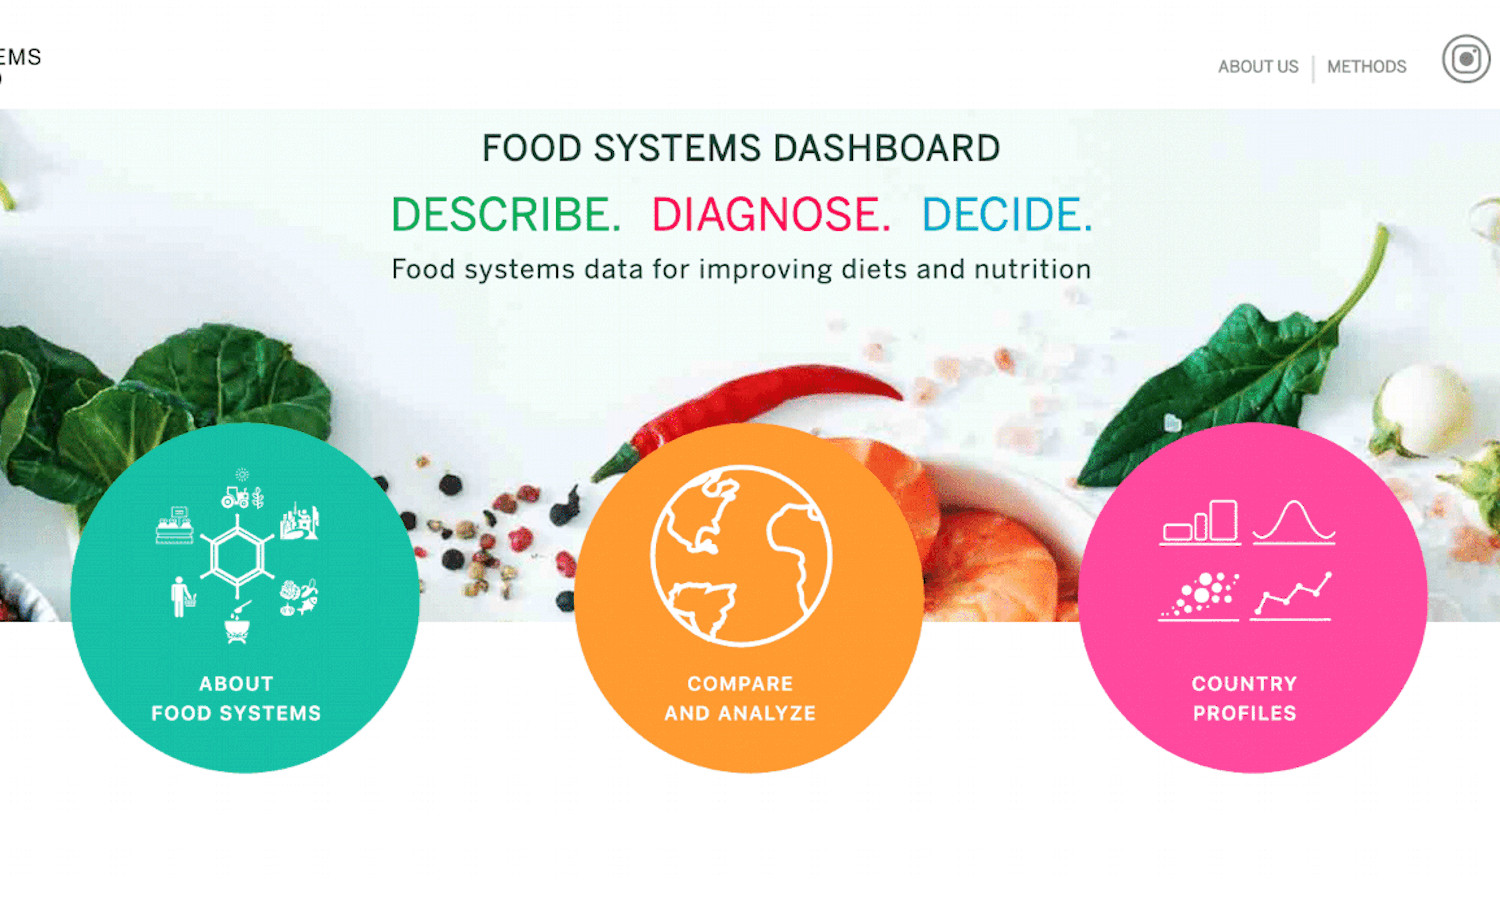 约翰·霍普金斯（Johns Hopkins）联盟为更健康的世界，收益和粮农组织创建了食品系统仪表板，以汇总必要的数据，以描绘230多个国家 /地区的食品系统。